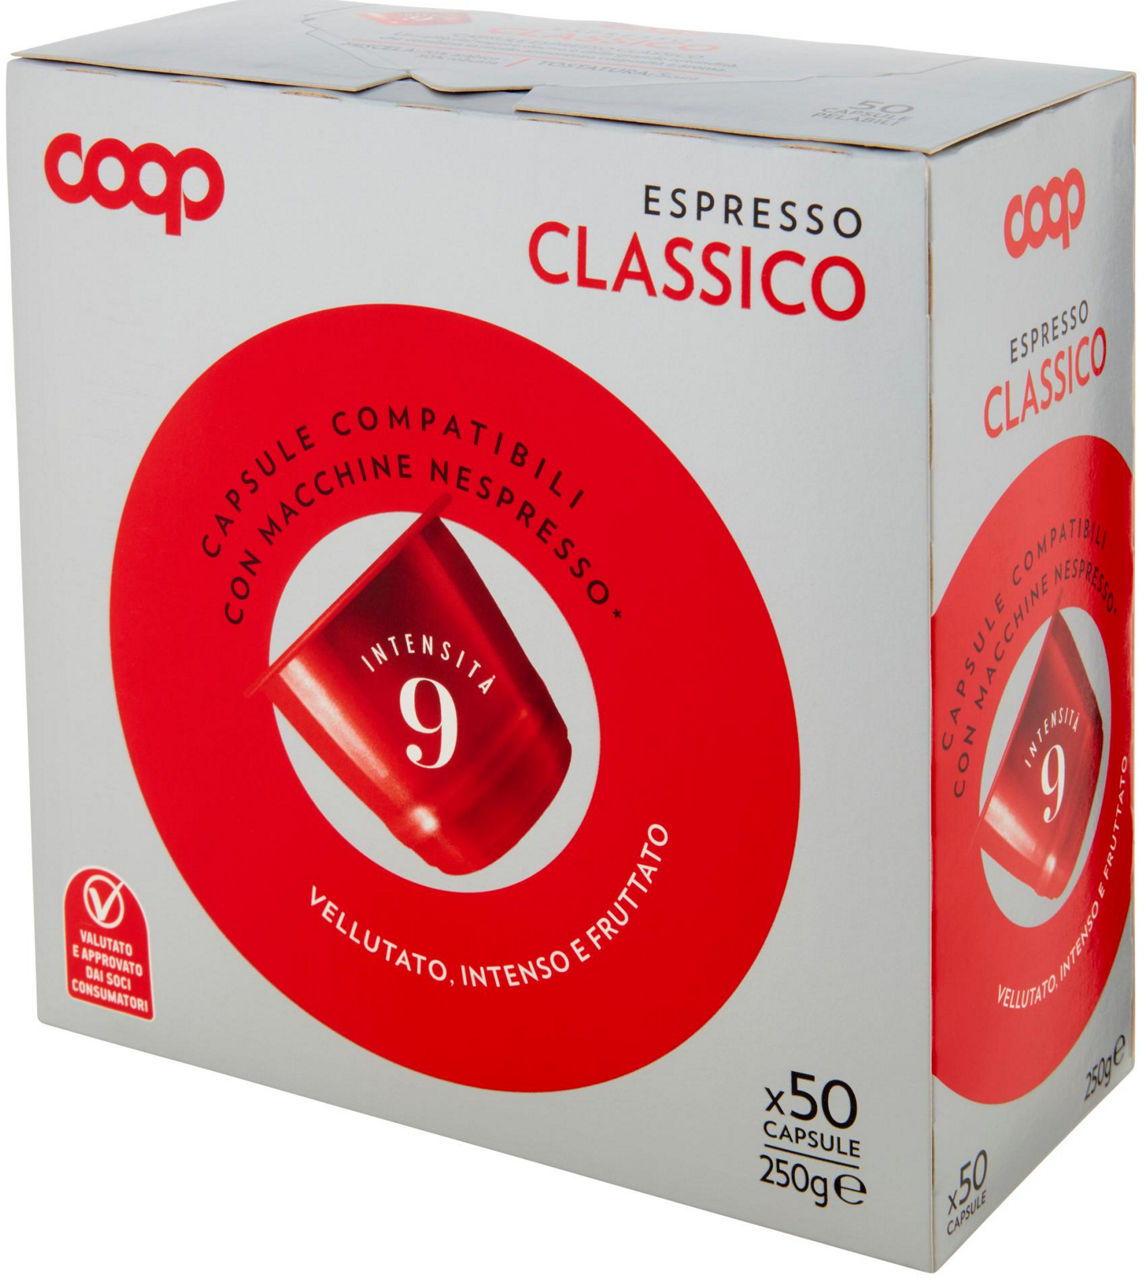 CAFFE' CAPSULE COOP ESPRESSO MISCELA CLASSICA COMP.NESPRESSO SC PZ.50 G250 - 6